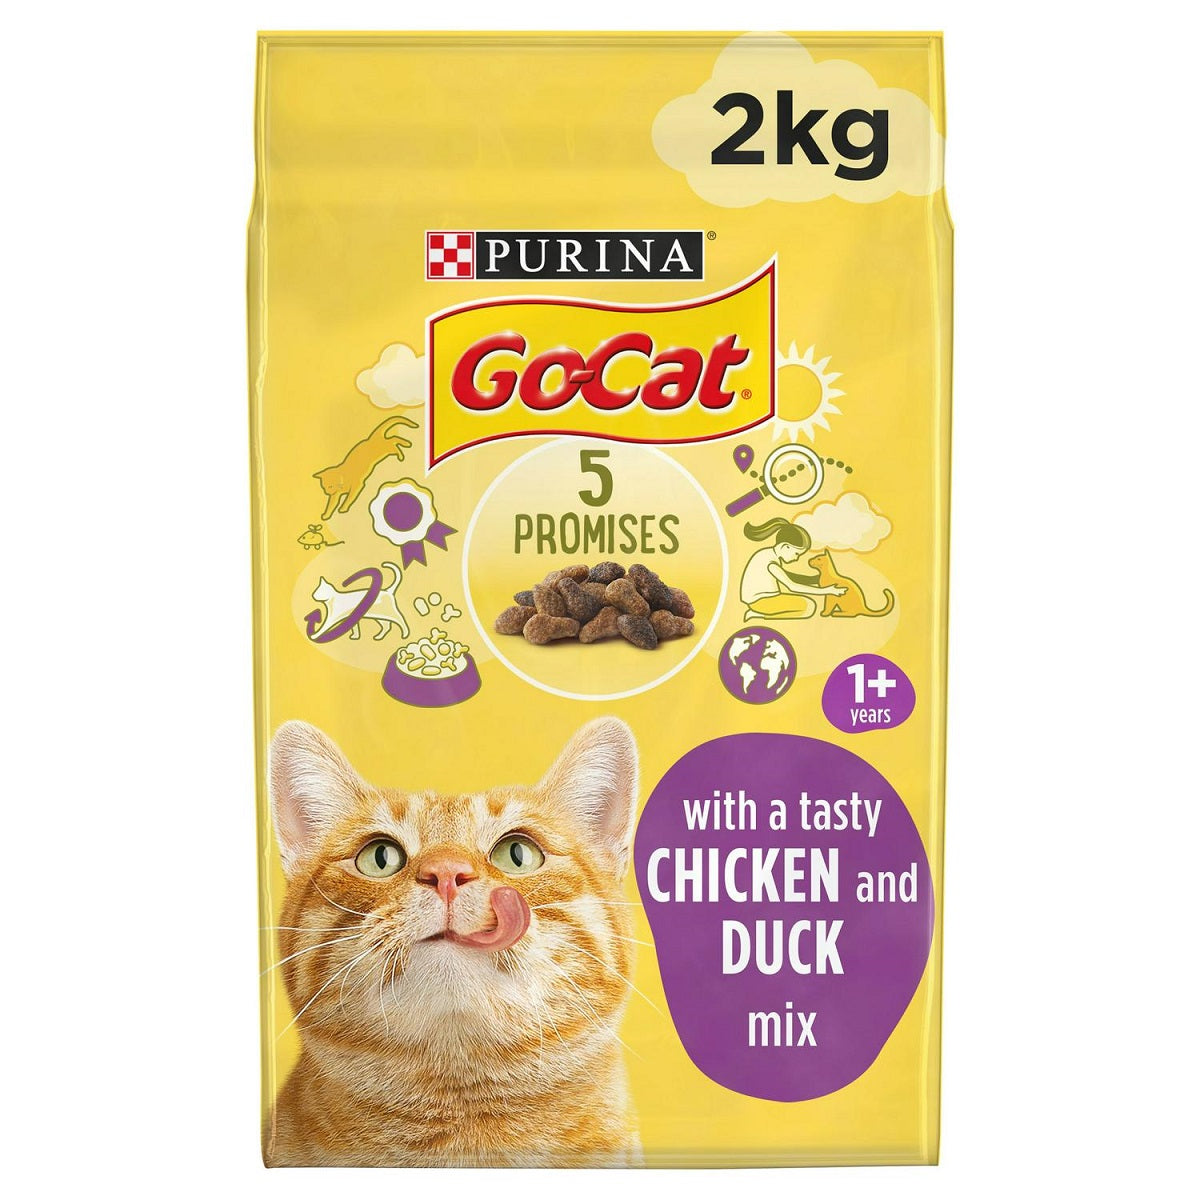 Go-Cat - Adult 1+ Chicken & Duck